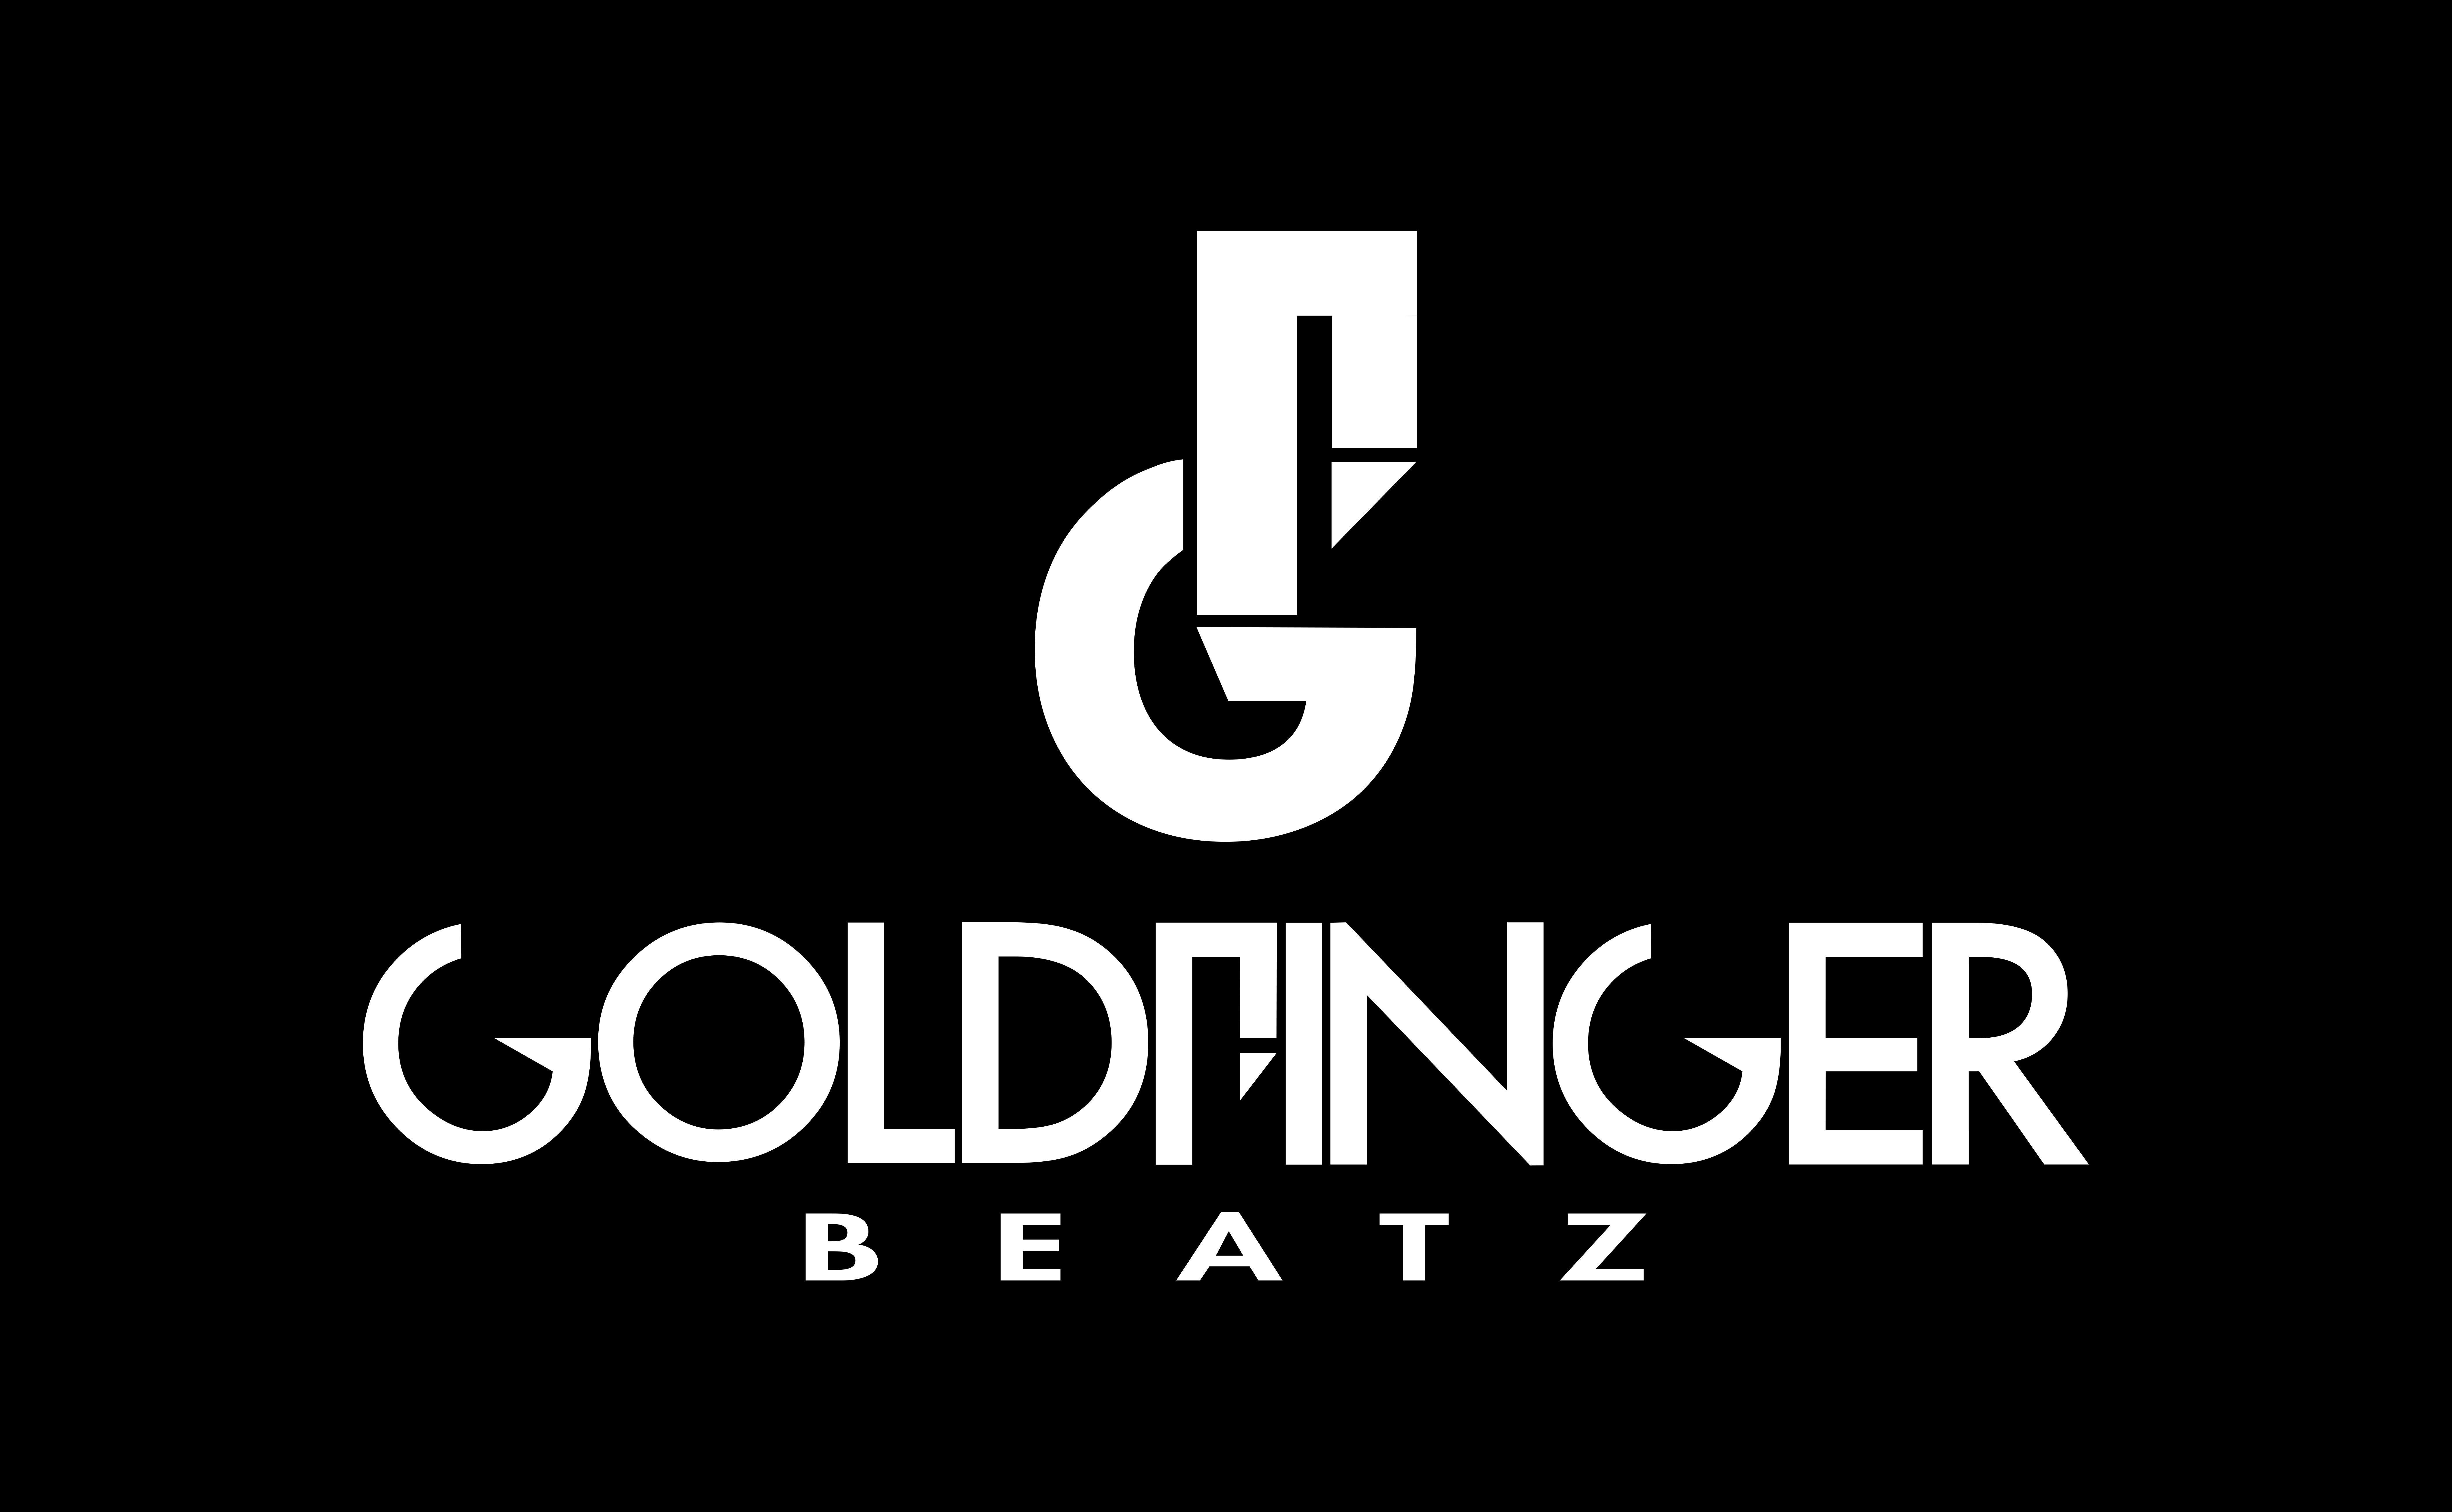 Beatz Logo - Goldfinger Beatz / Flat www.sinedgfx.com #goldfinger #beatz #sls ...